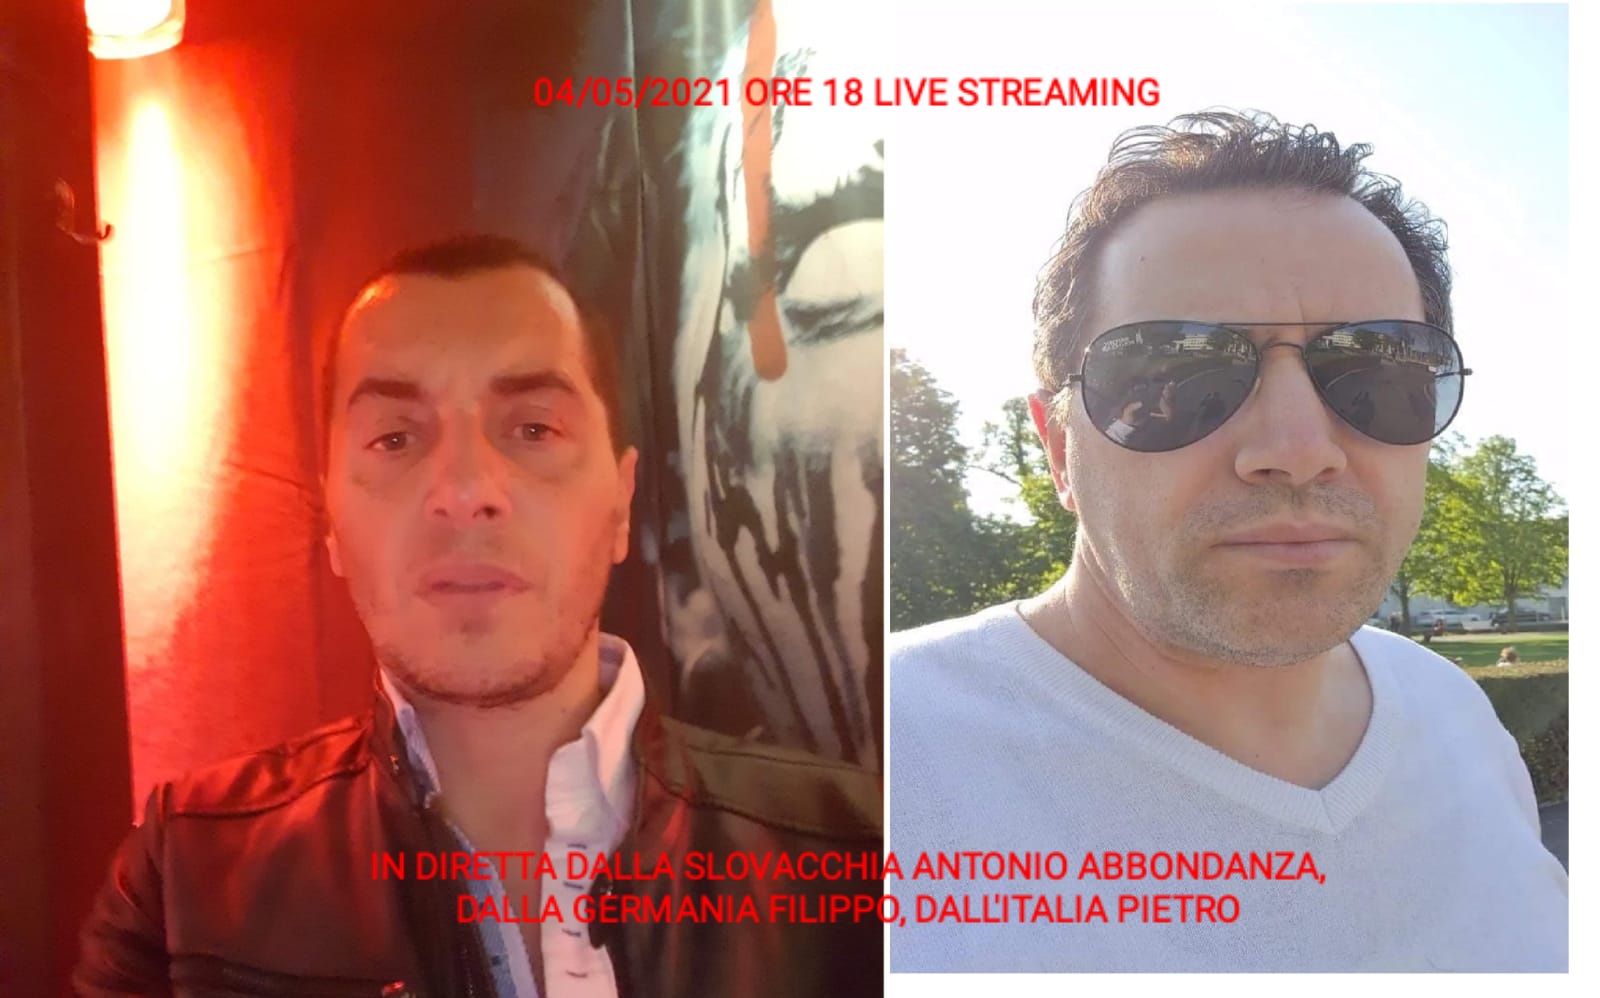 LIVE STREAMING 04/05/2021 ORE 18:00 GERMANIA (Filippo) - SLOVACCHIA (Antonio Abbondanza) - ITALIA (Pietro) PARTE 1